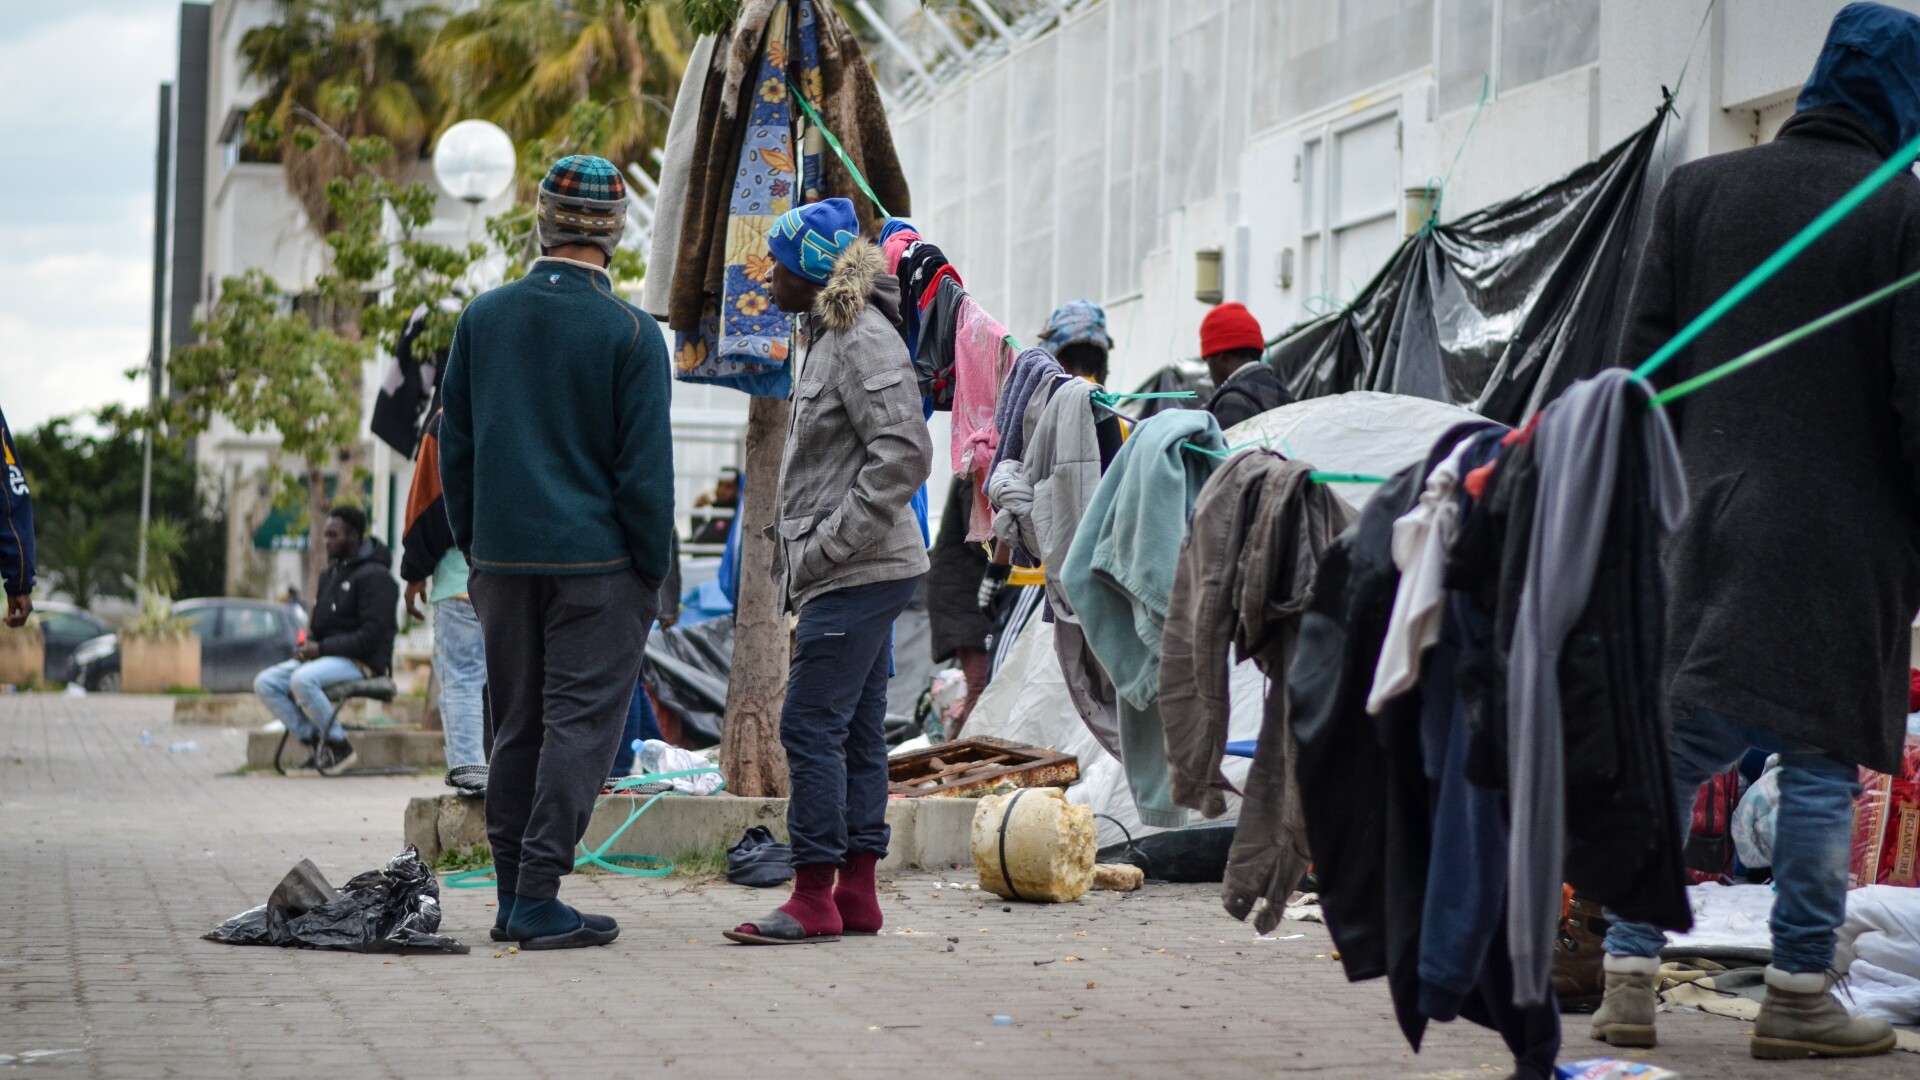 Migranti Tunisia